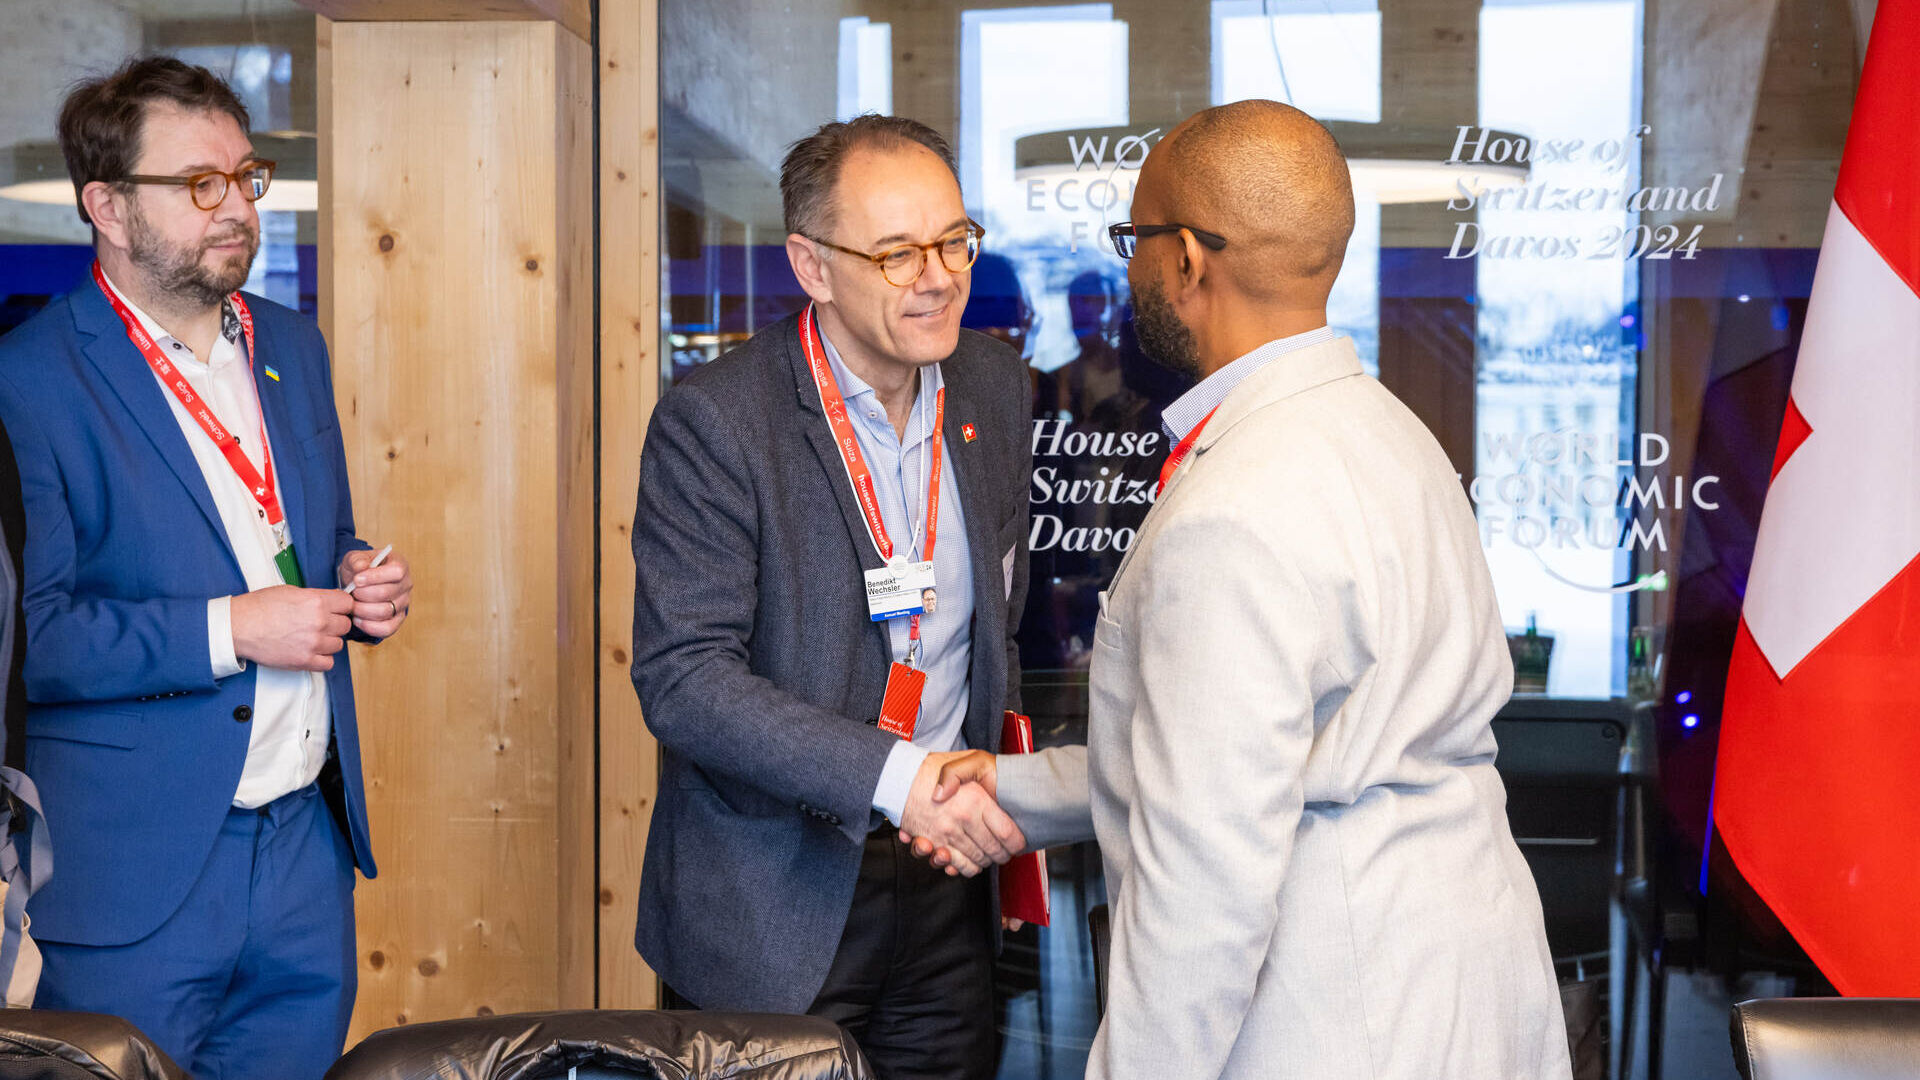 International Computation and AI Network: setkání „Swiss AI Initiative“ (zahájené Federální polytechnikou v Curychu a Lausanne a Švýcarským centrem pro vědecké výpočty) na Světovém ekonomickém fóru v roce 2024 v Davosu (kanton Graubünden)